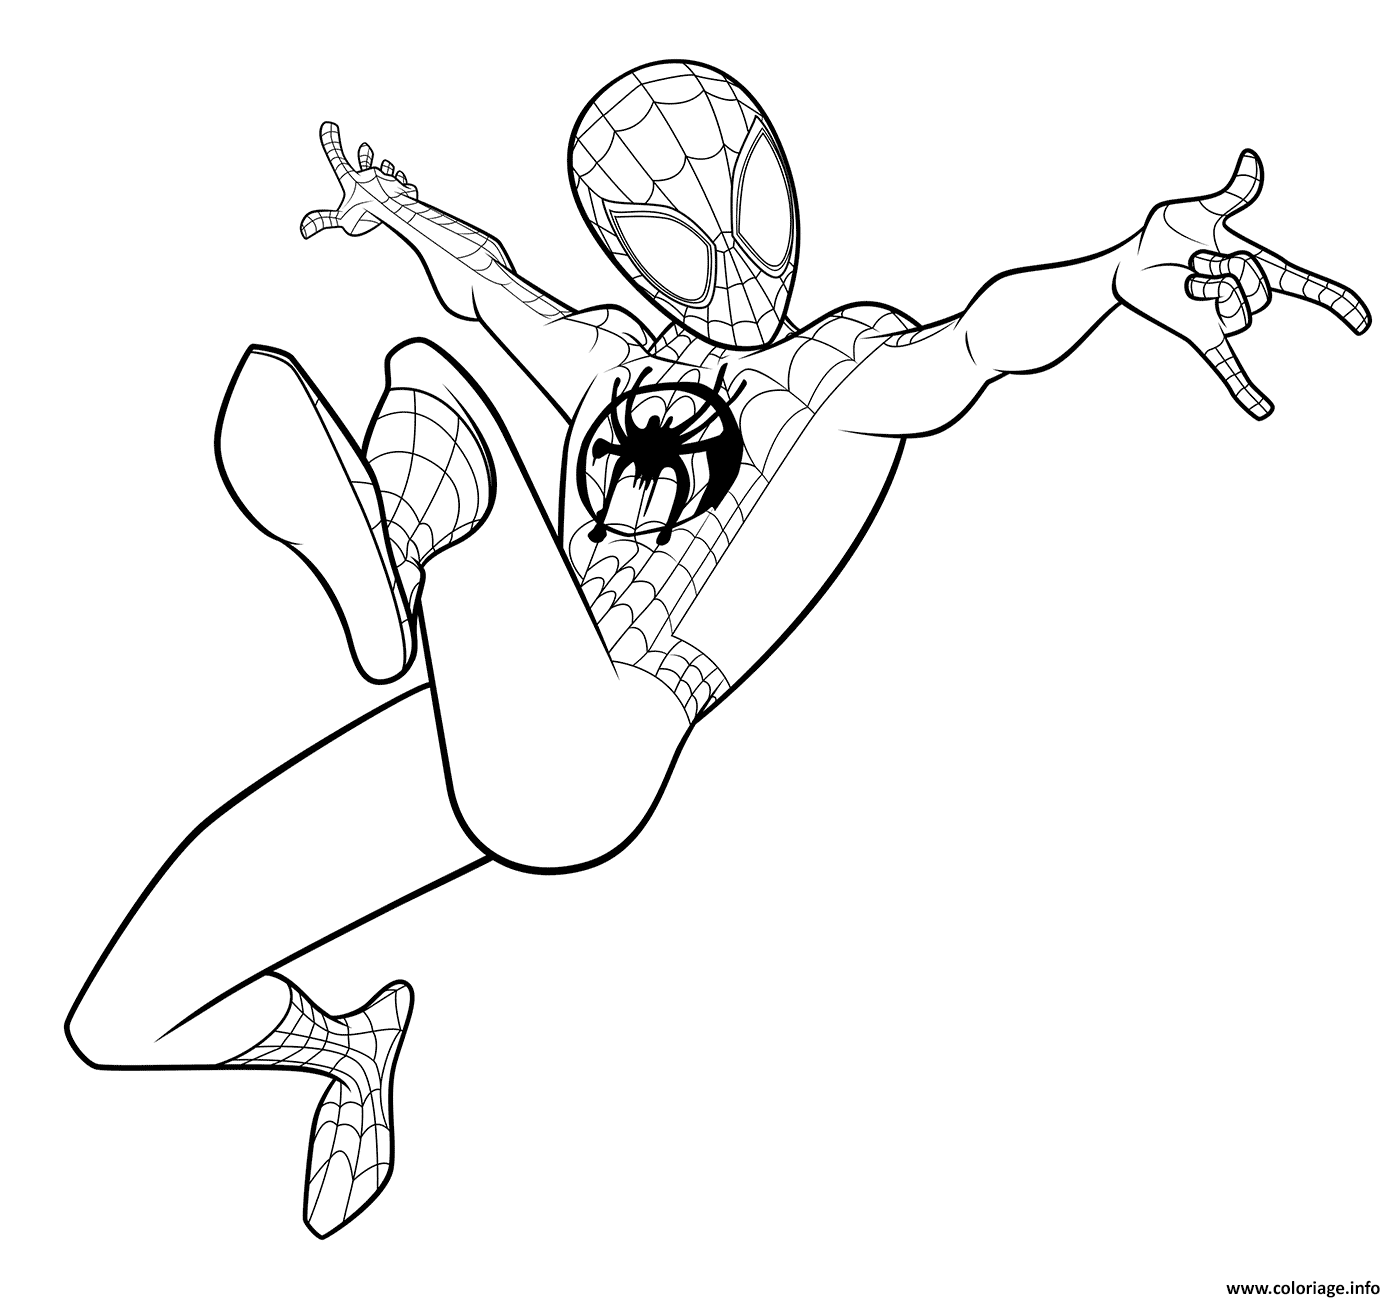 Dessin Spider Man Coloring Miles Morales Coloriage Gratuit à Imprimer